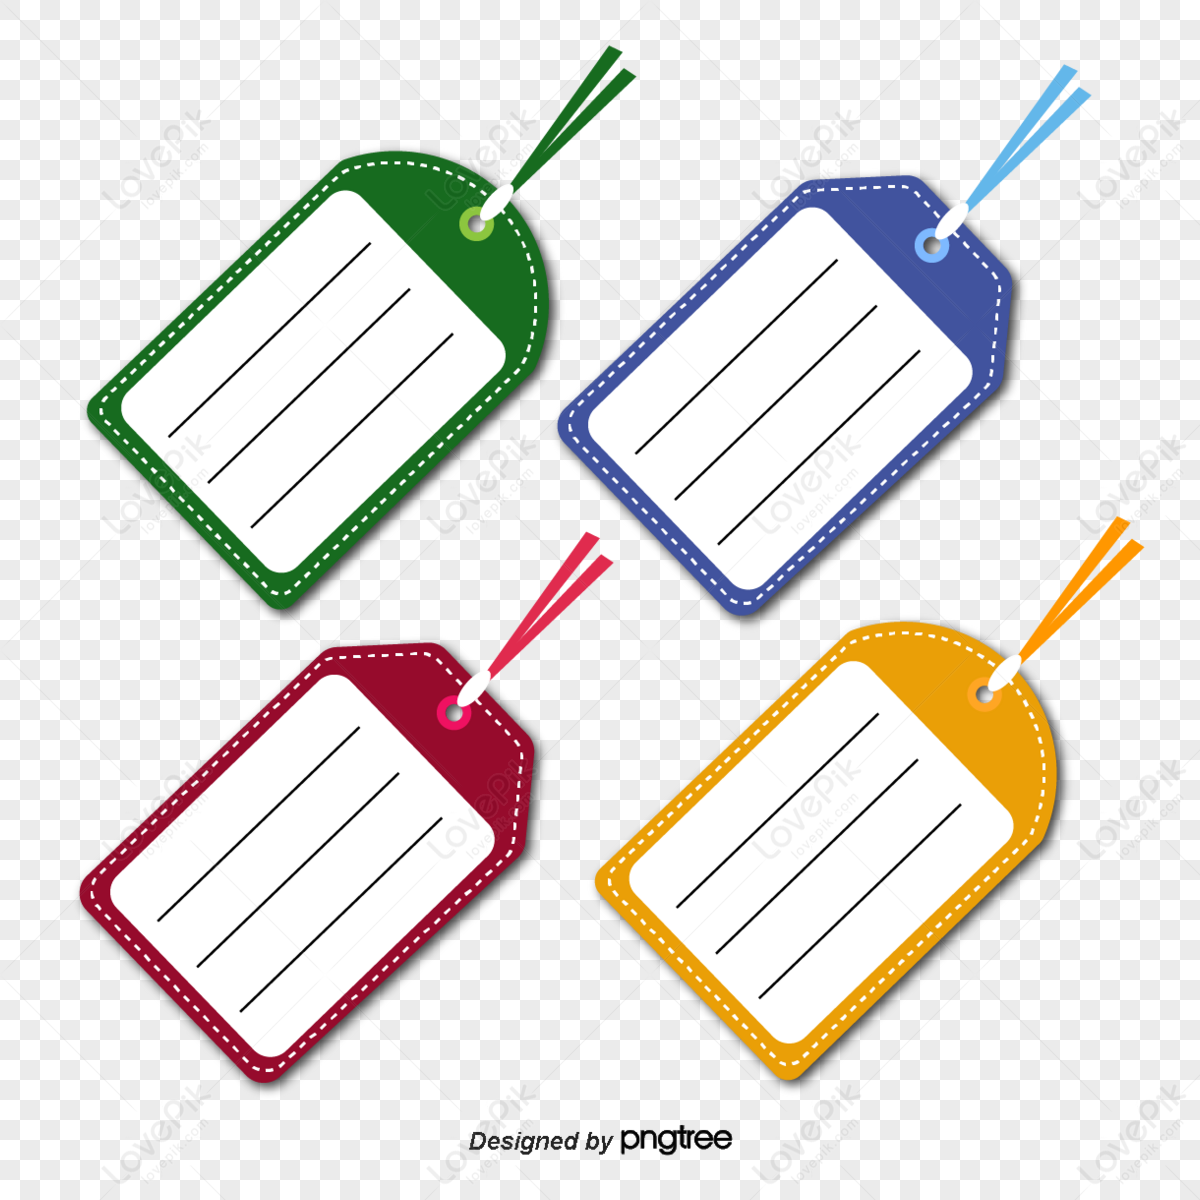 Cartoon colourful luggage tag combination,color,cartoon baggage tag,travel luggage tag png hd transparent image